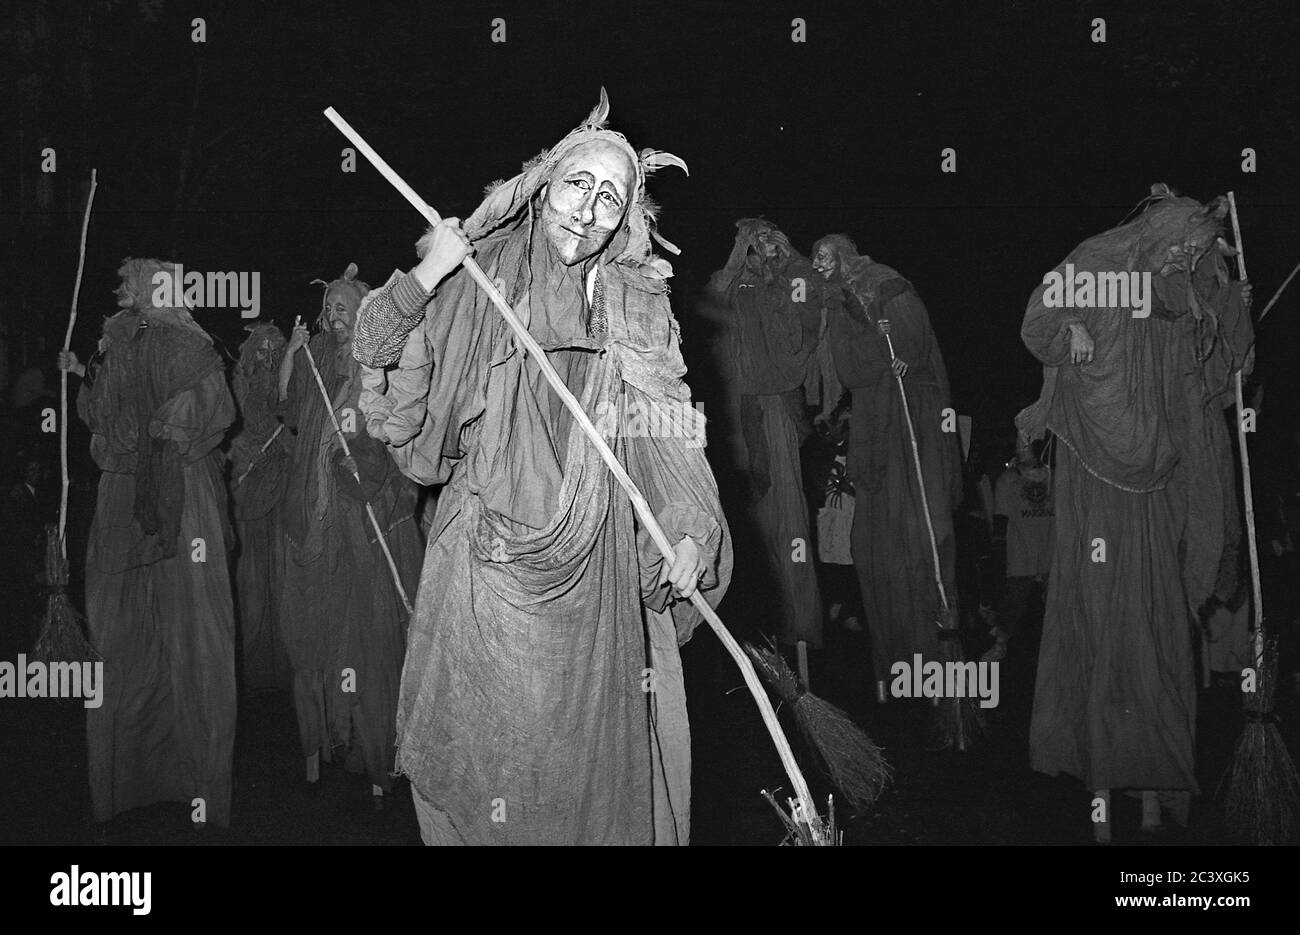 Costume da spazzatrice alla Greenwich Village Halloween Parade, New York City, USA negli anni '80 fotografato con film in bianco e nero di notte. Foto Stock